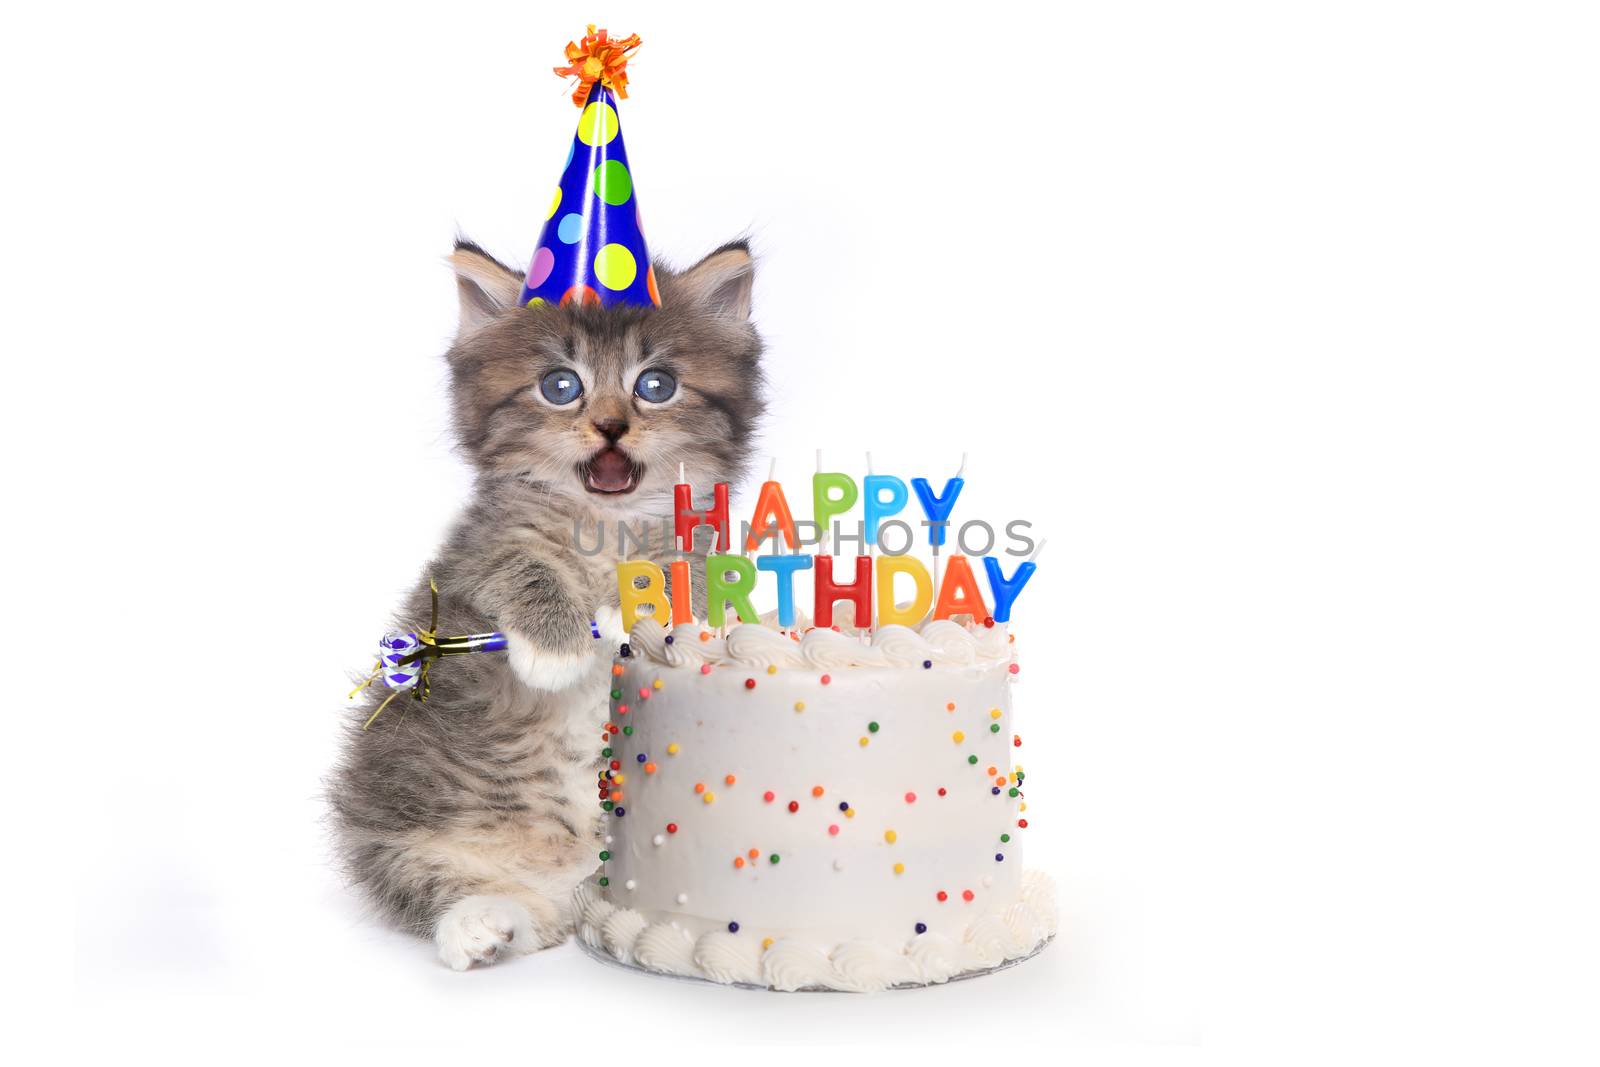 Kitten on White With Birthday Cake Celebration by tobkatrina